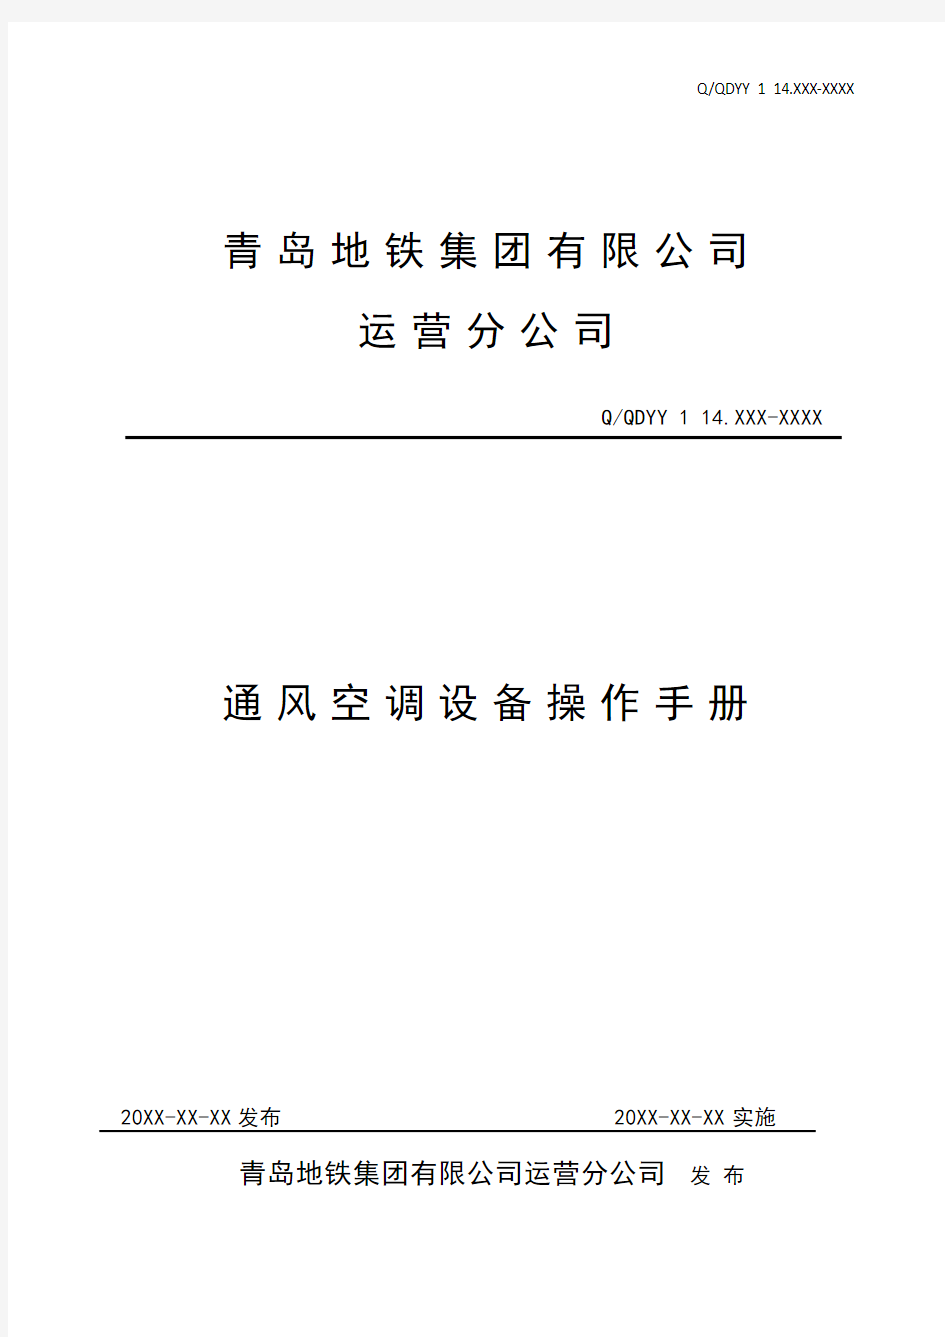 通风空调系统操作手册-2014.12.16 (2)